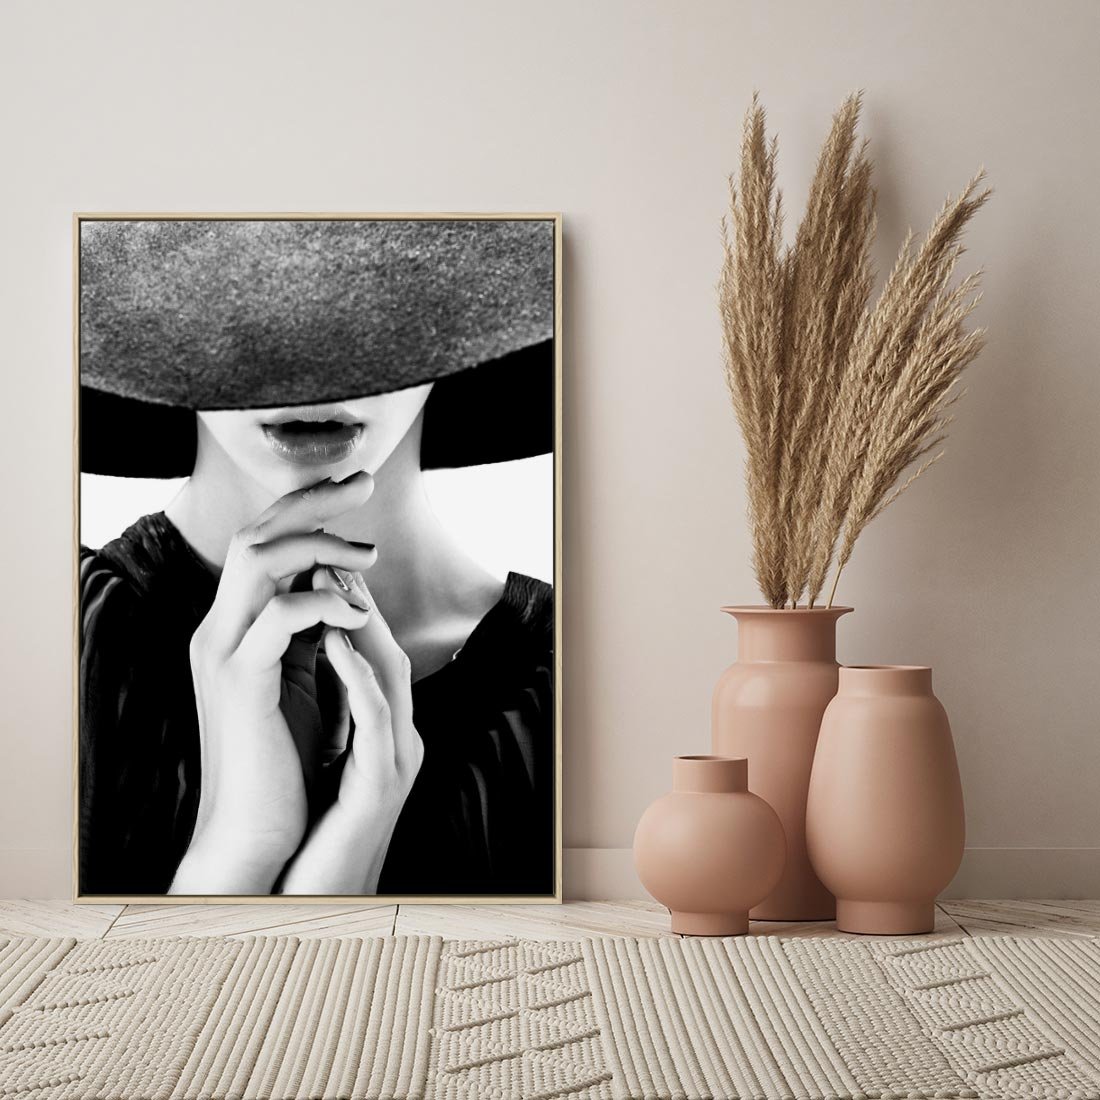 Obraz w ramie 50x70 - Czarna Elegancja - fotografia czarno biała, zbliżenie portret kobiety w czerni - rama drewno